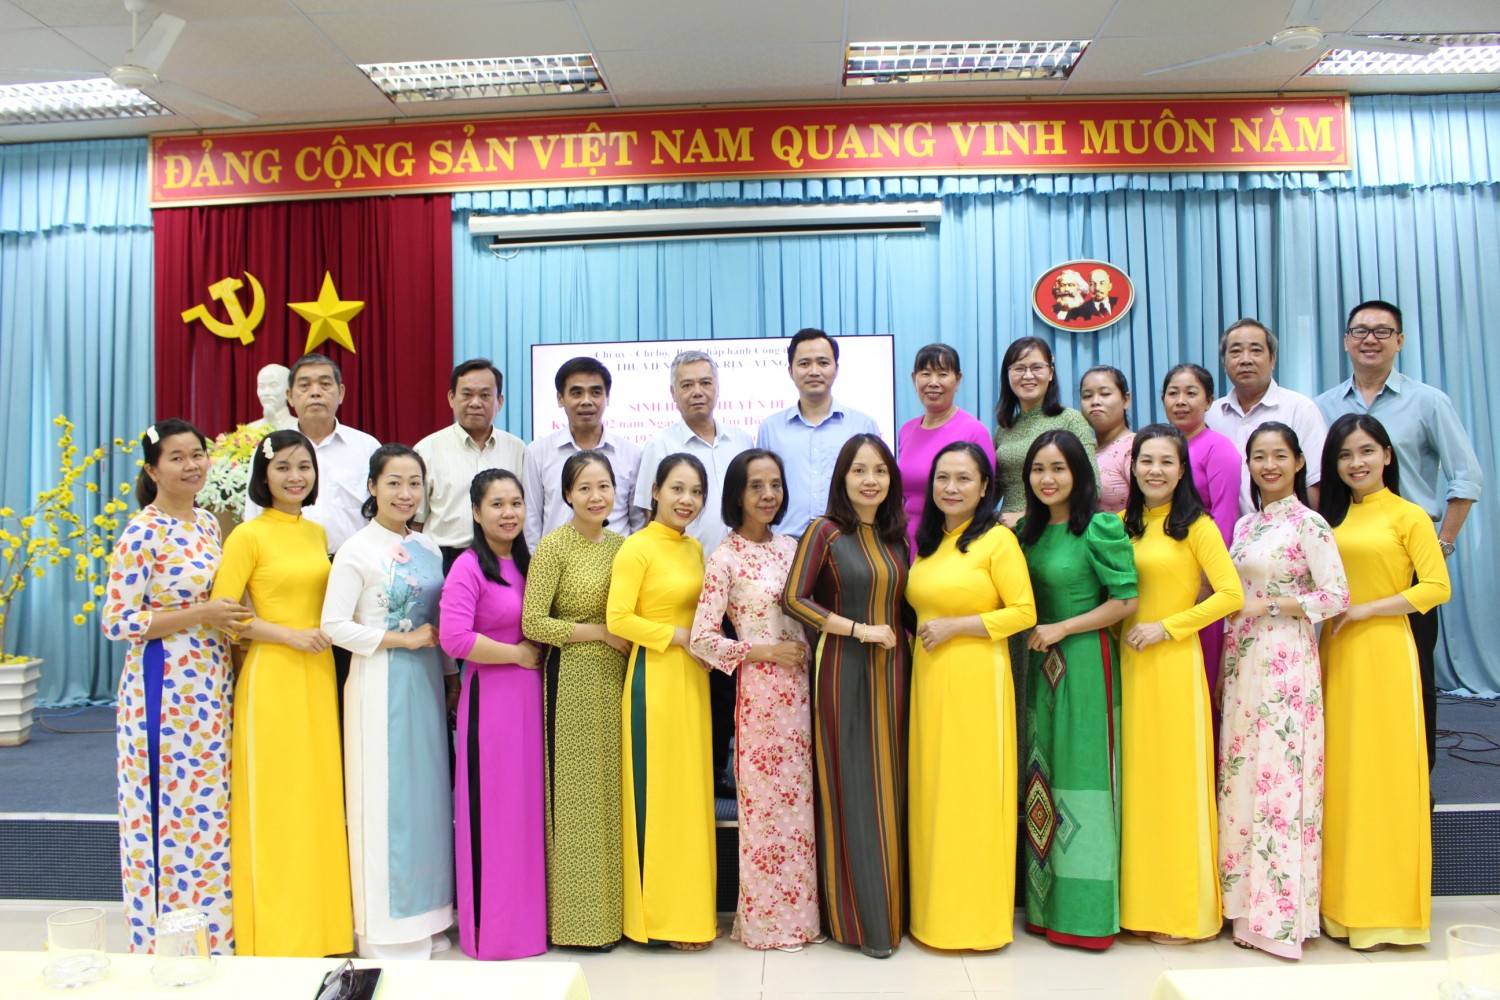 Thư viện tỉnh Bà Rịa – Vũng Tàu: Sinh hoạt Chuyên đề Kỷ niệm 92 năm Ngày Thành lập Hội Liên hiệp Phụ nữ Việt Nam